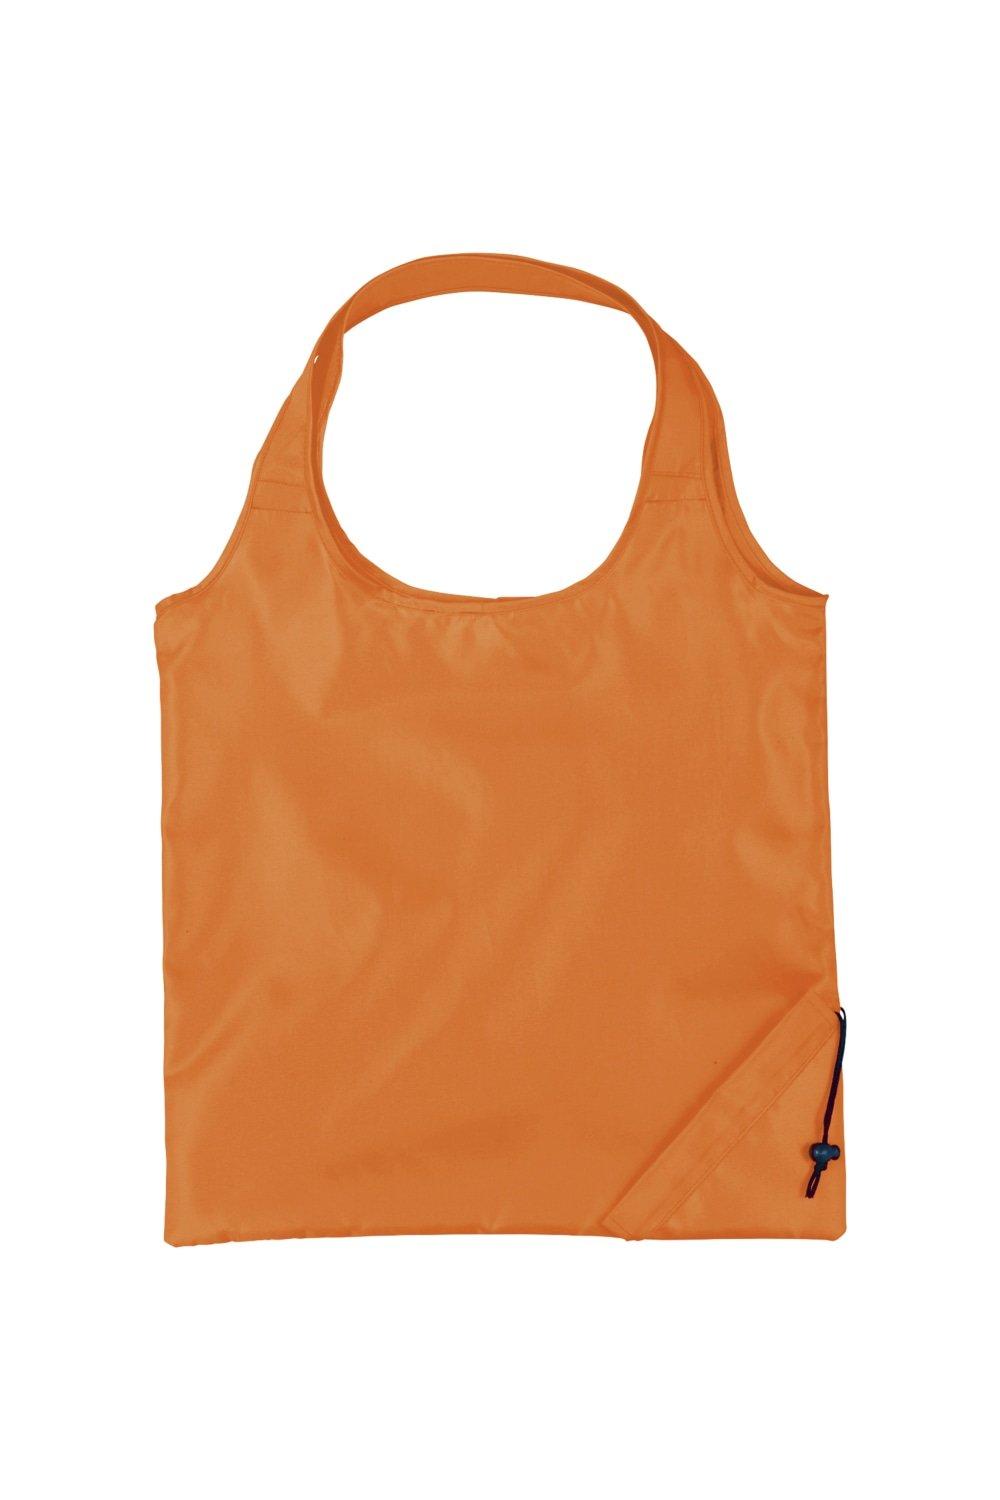 Складная сумка-тоут Bungalow из полиэстера (2 шт.) Bullet, оранжевый